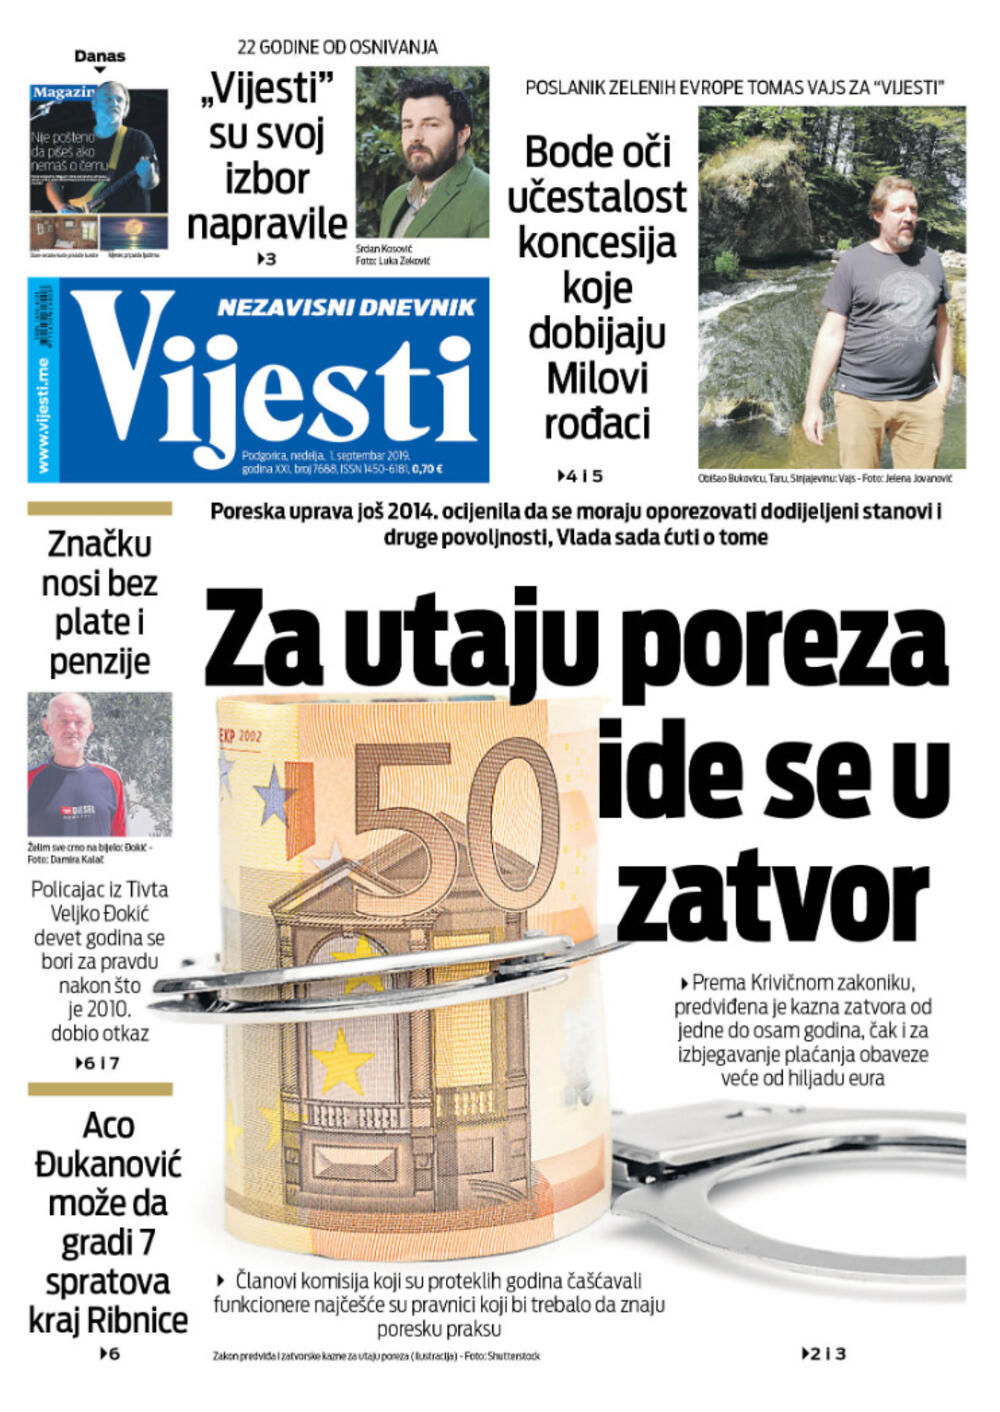 Naslovna strana "Vijesti" za 01. septembar